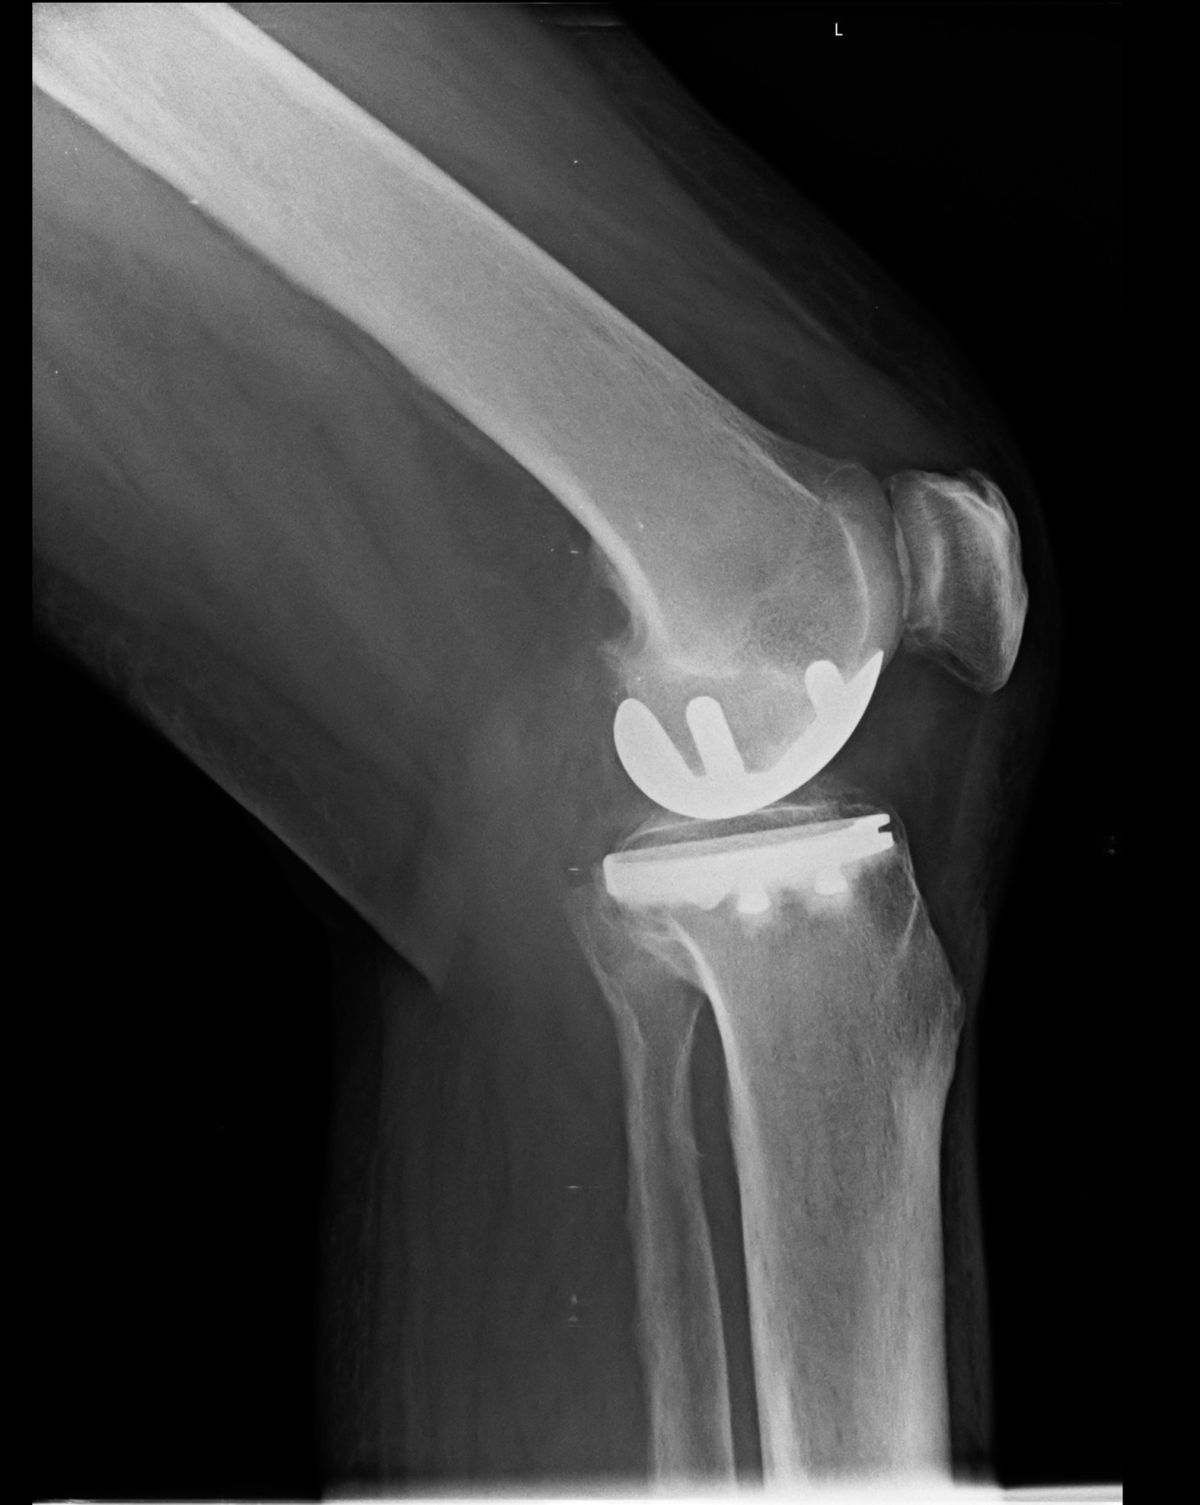 Kniearthrose: Es muss nicht immer eine ganze Prothese sein